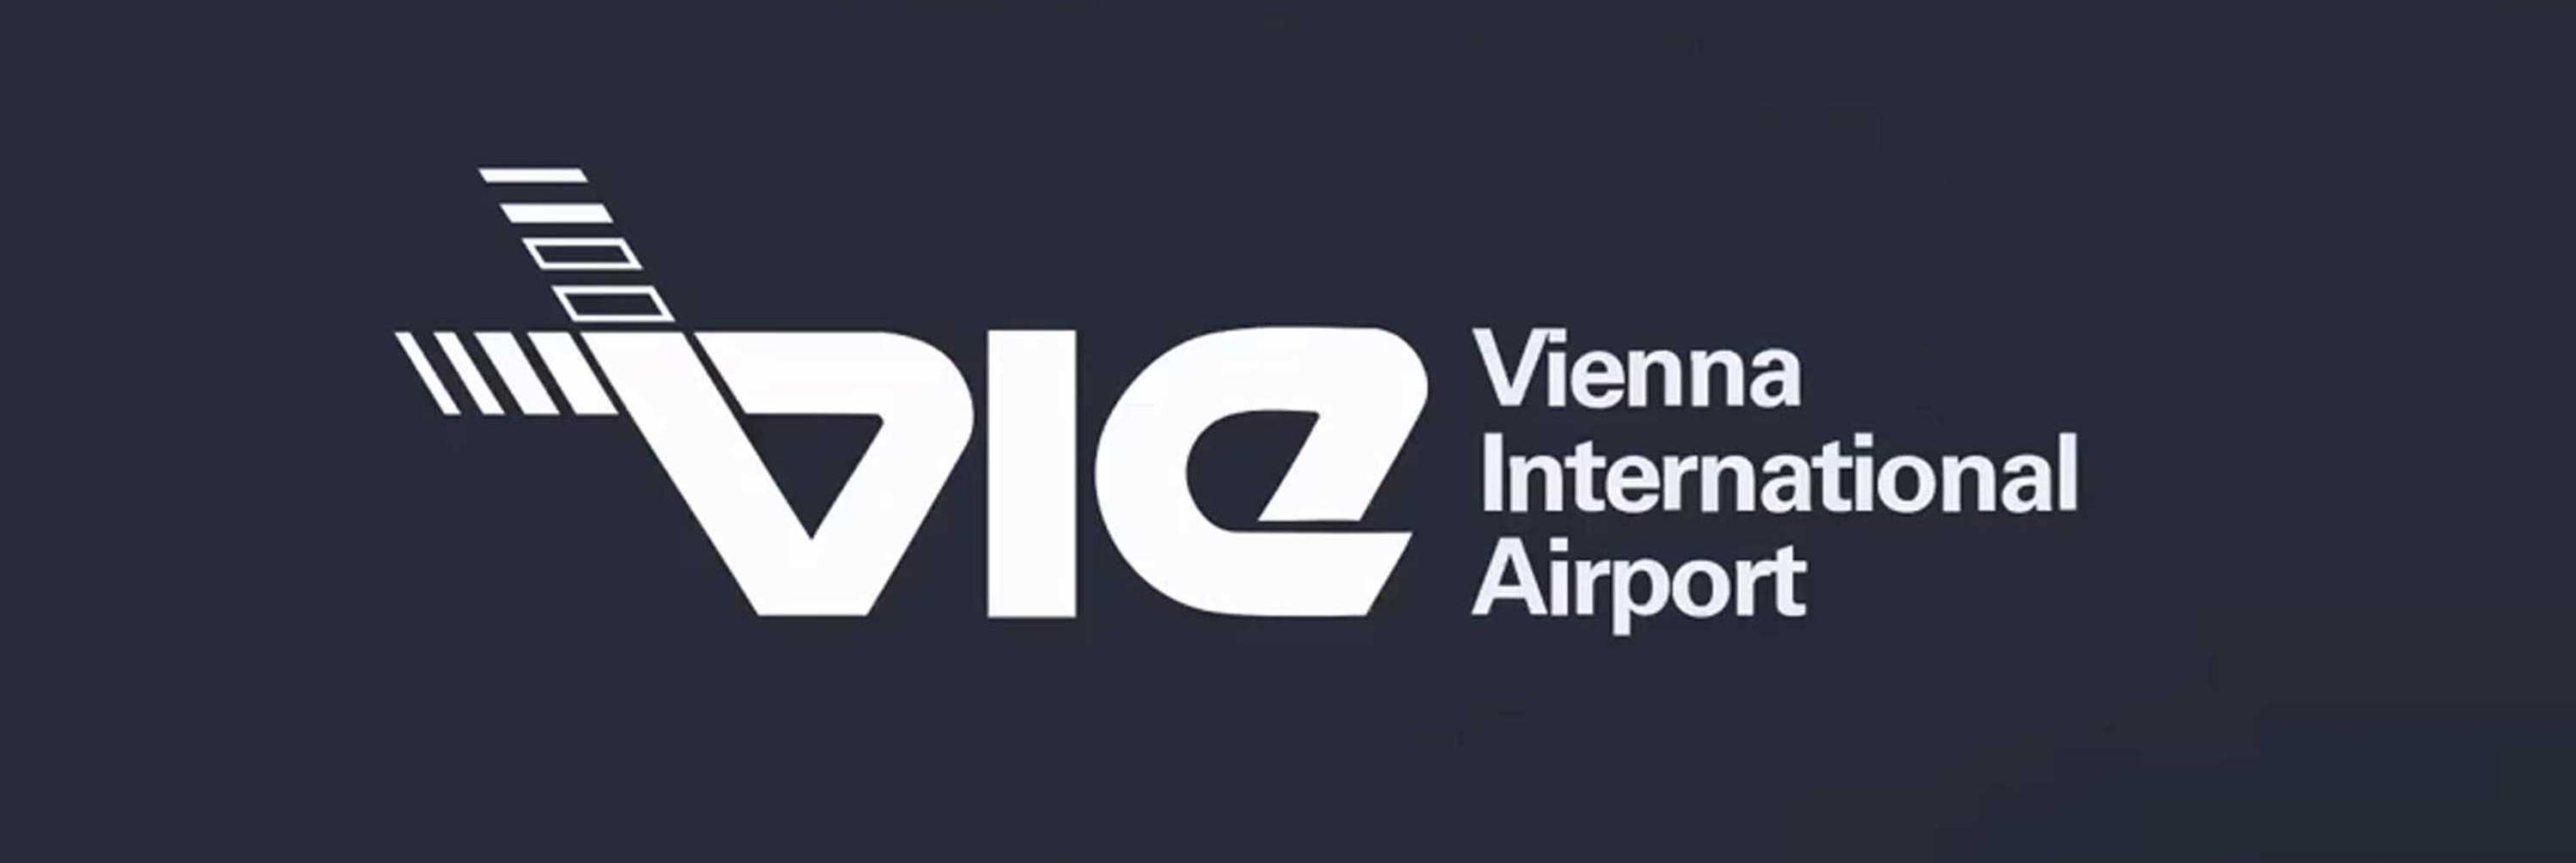 Vienna Airport Case Study